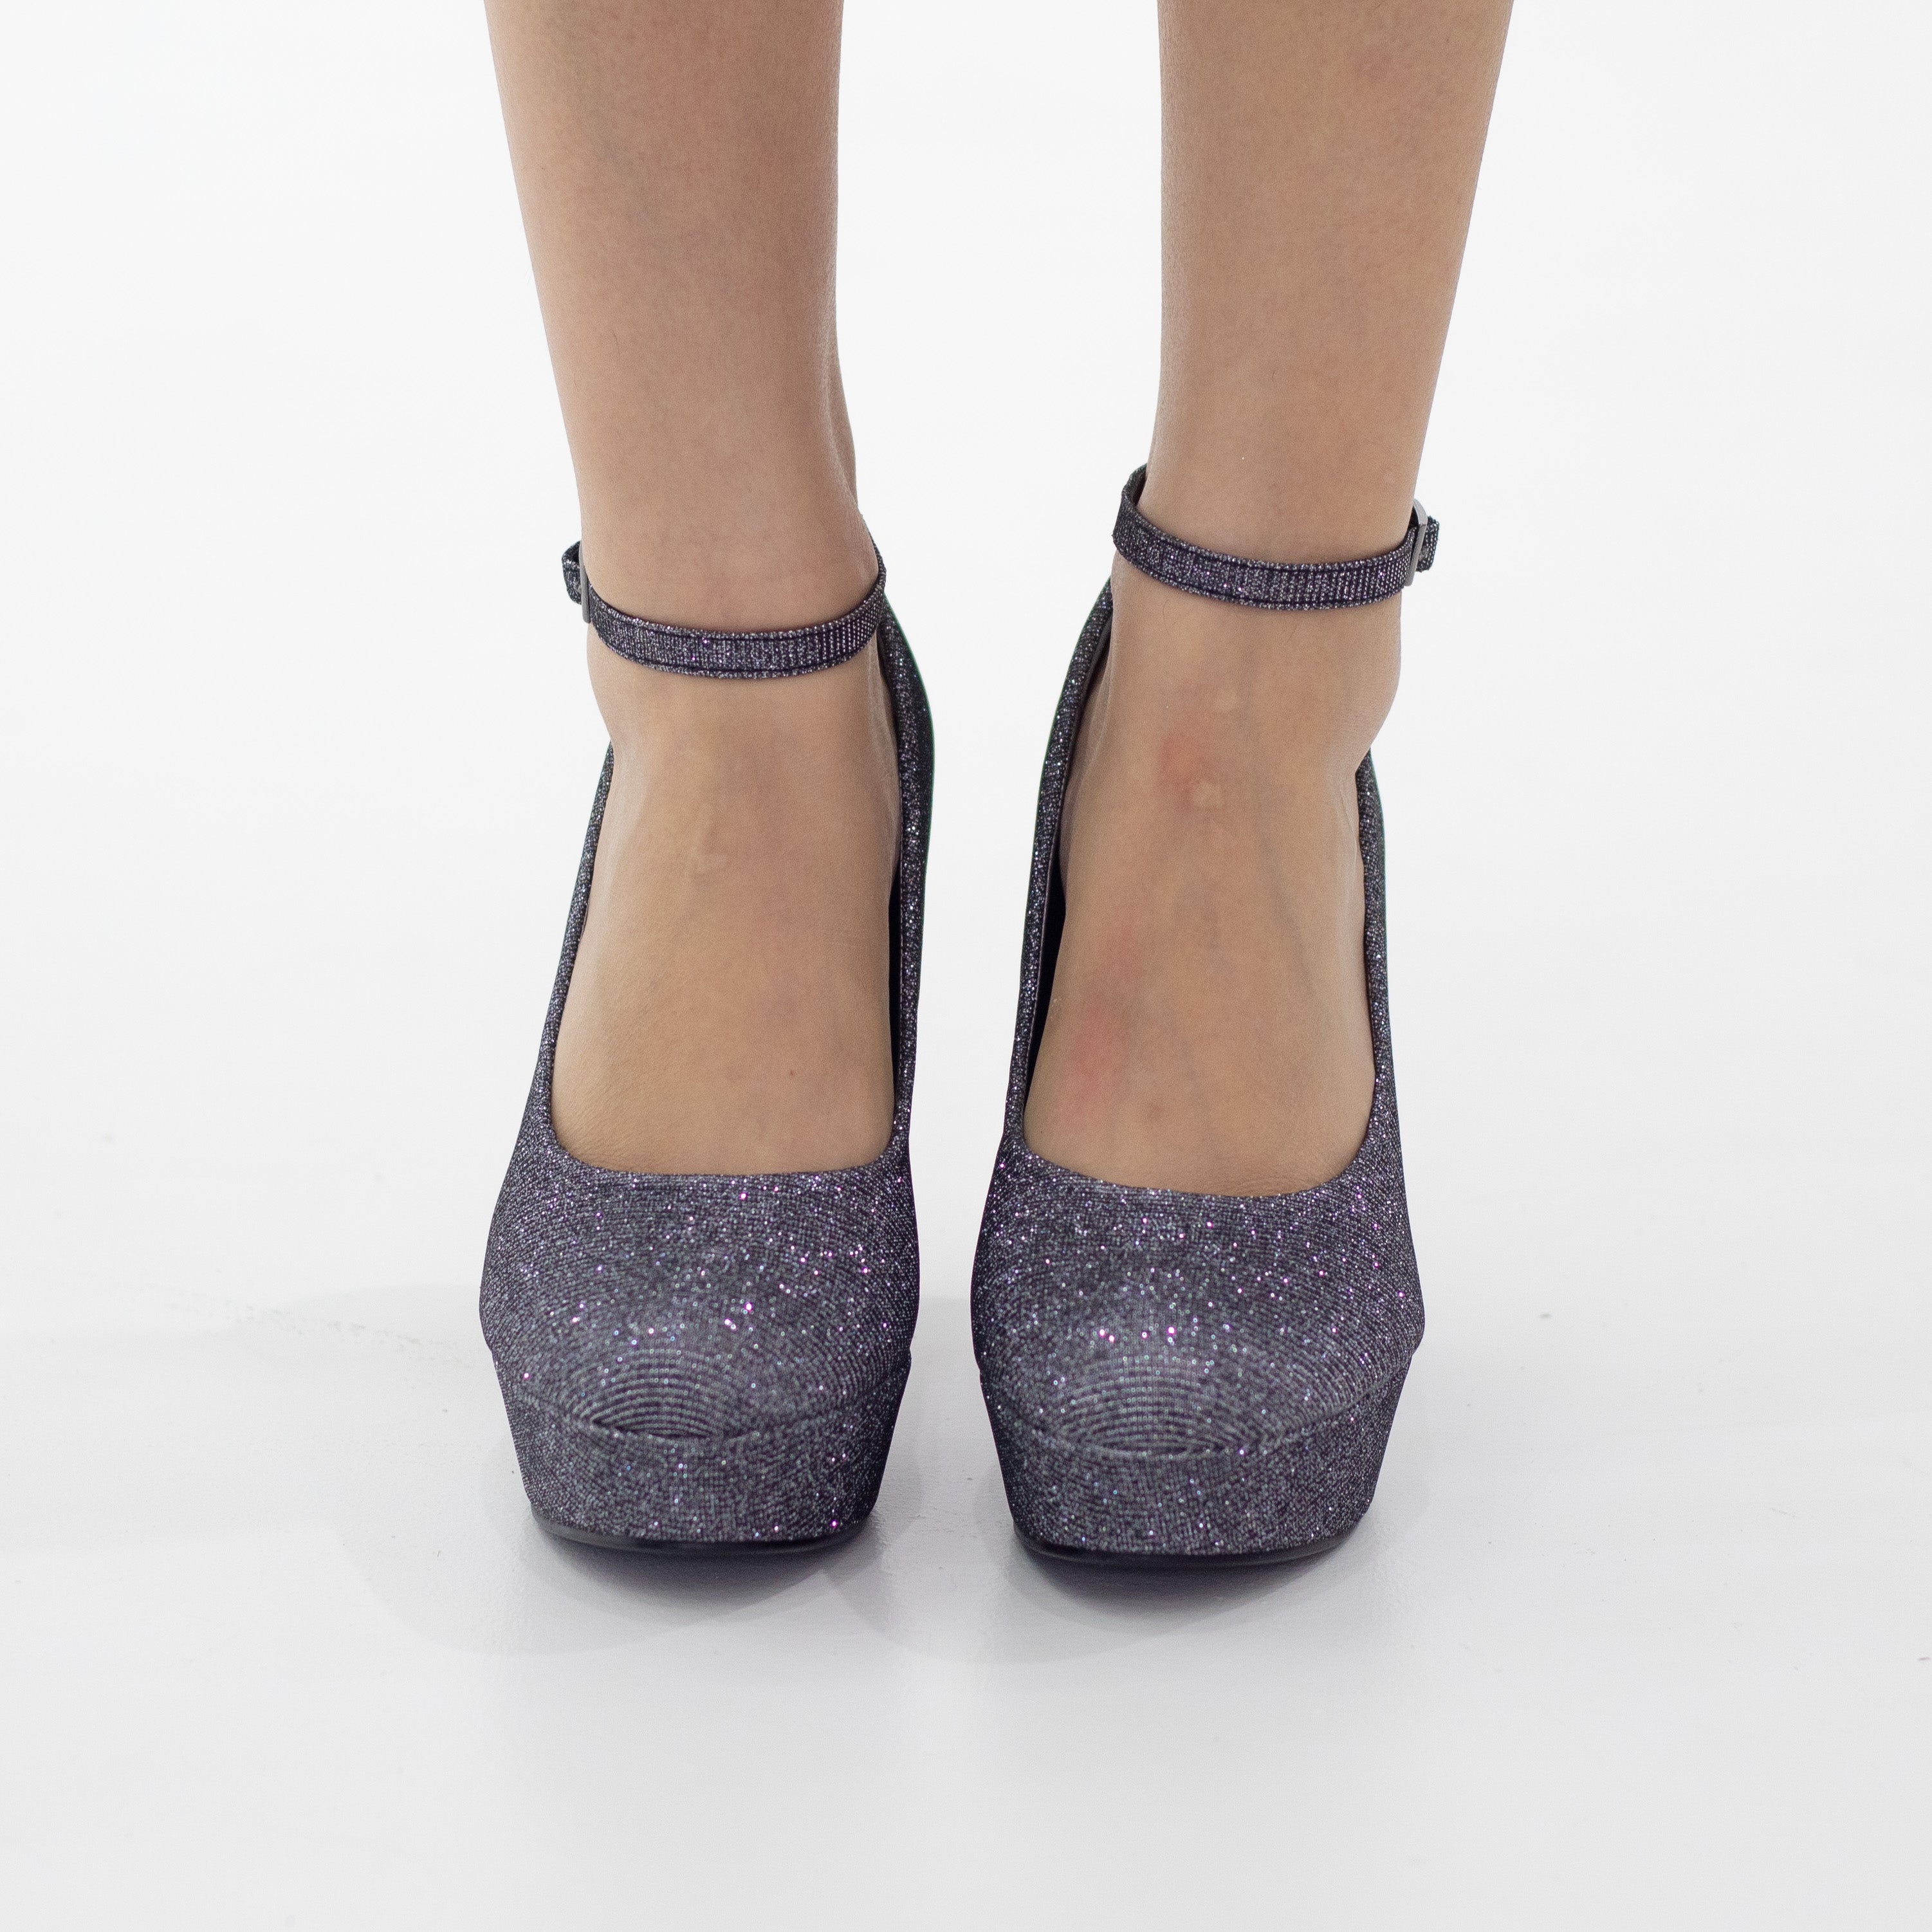 Pewter ankle strap platform courts shimmer 12cm heel irana